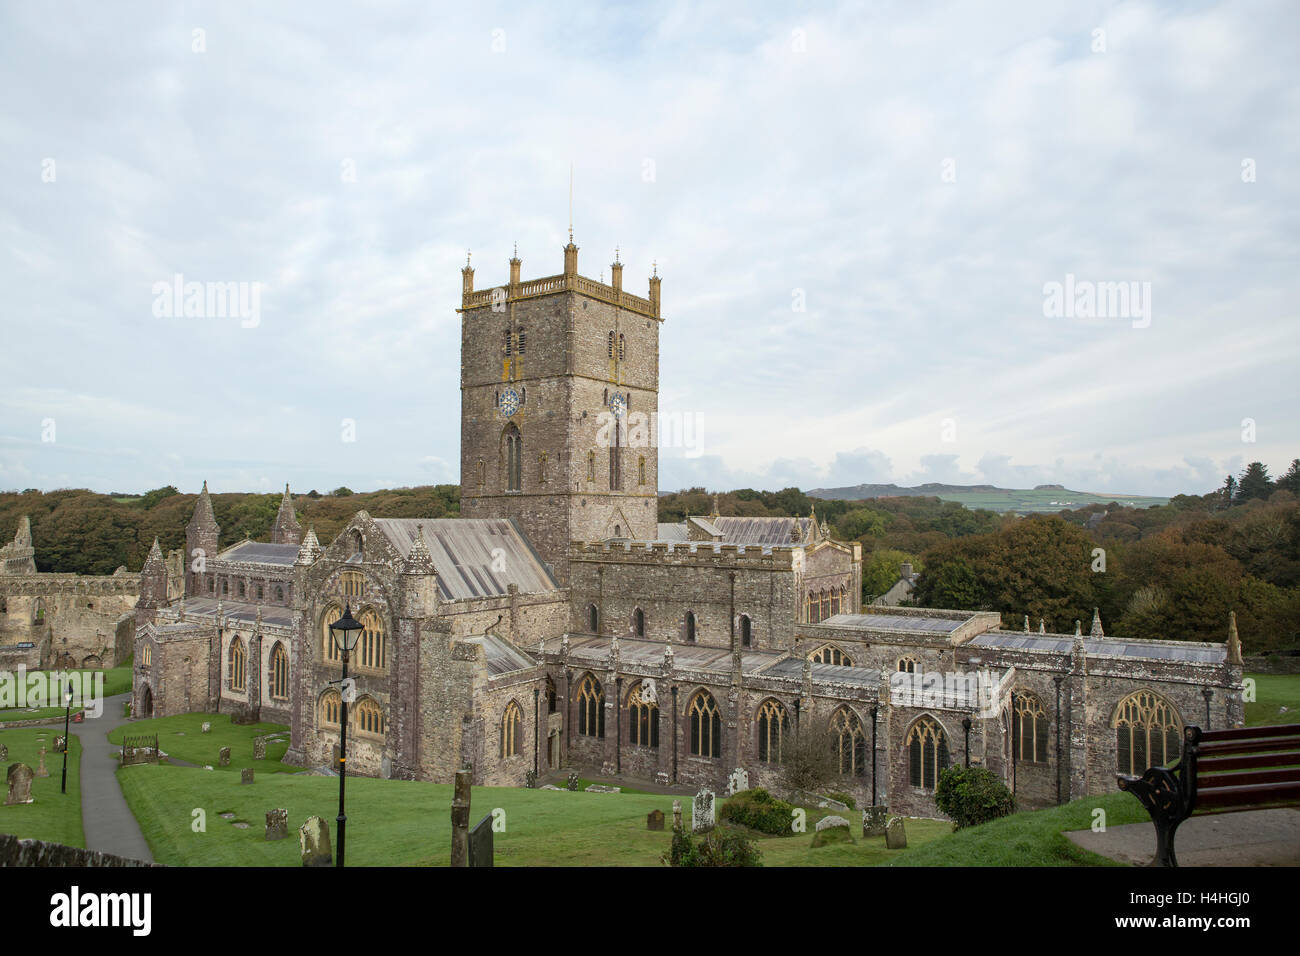 Cathédrale de St Davids Pembrokeshire dans l'ouest du pays de Galles. Banque D'Images